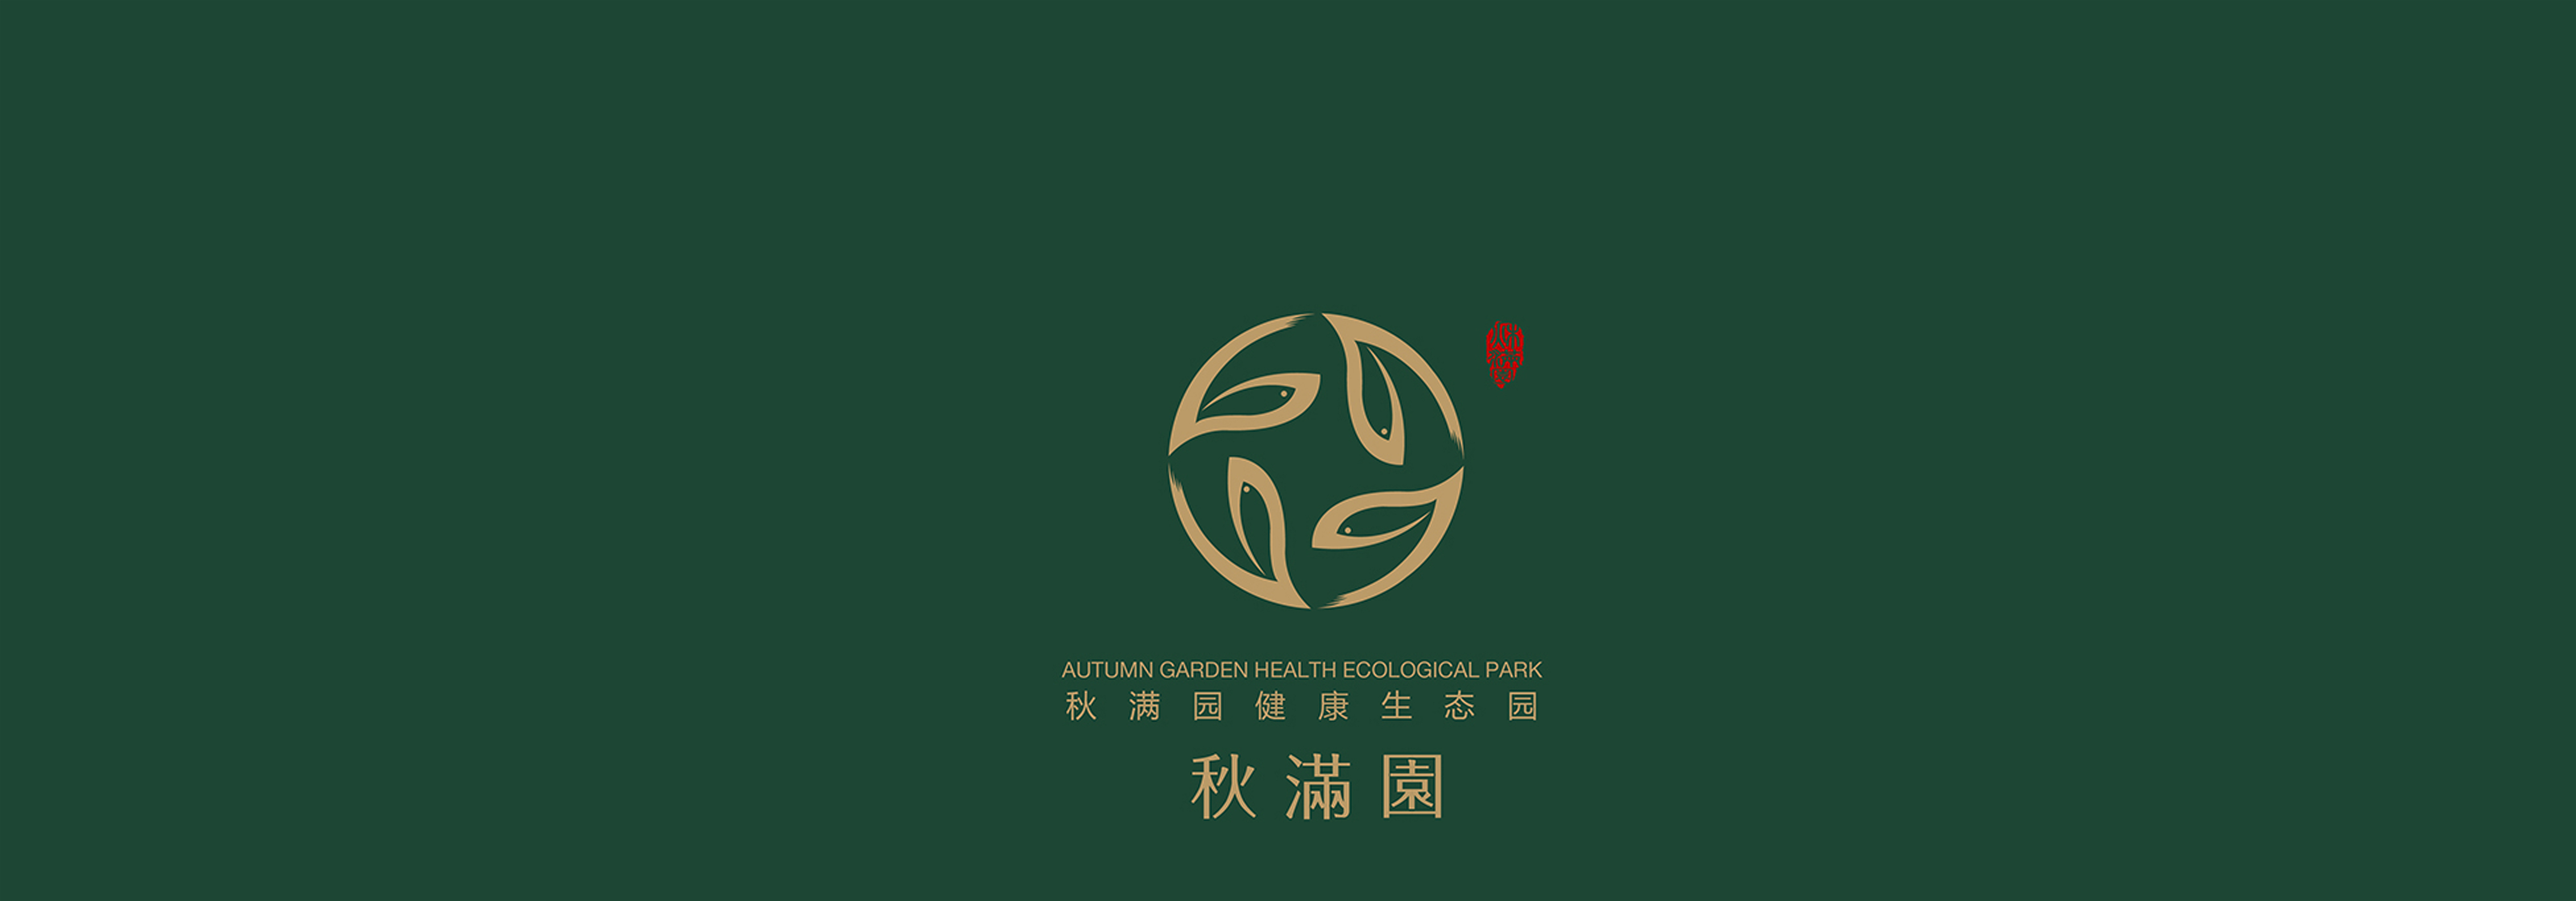 热烈祝贺 此次2017台州市农业技术现场会在秋满园生态园举办！！！